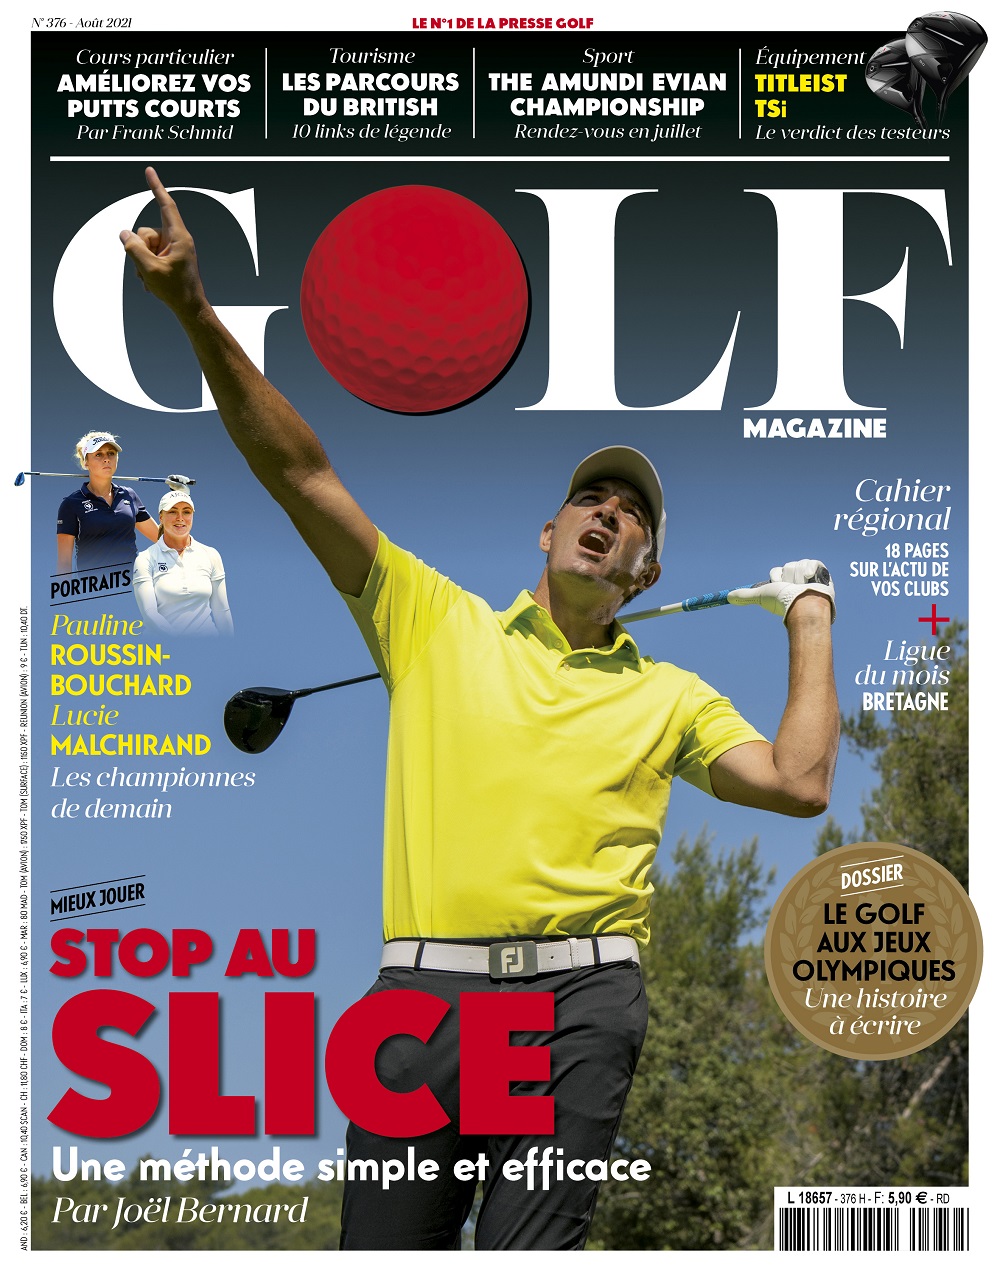 Le Golf Magazine n°376 est en kiosque !